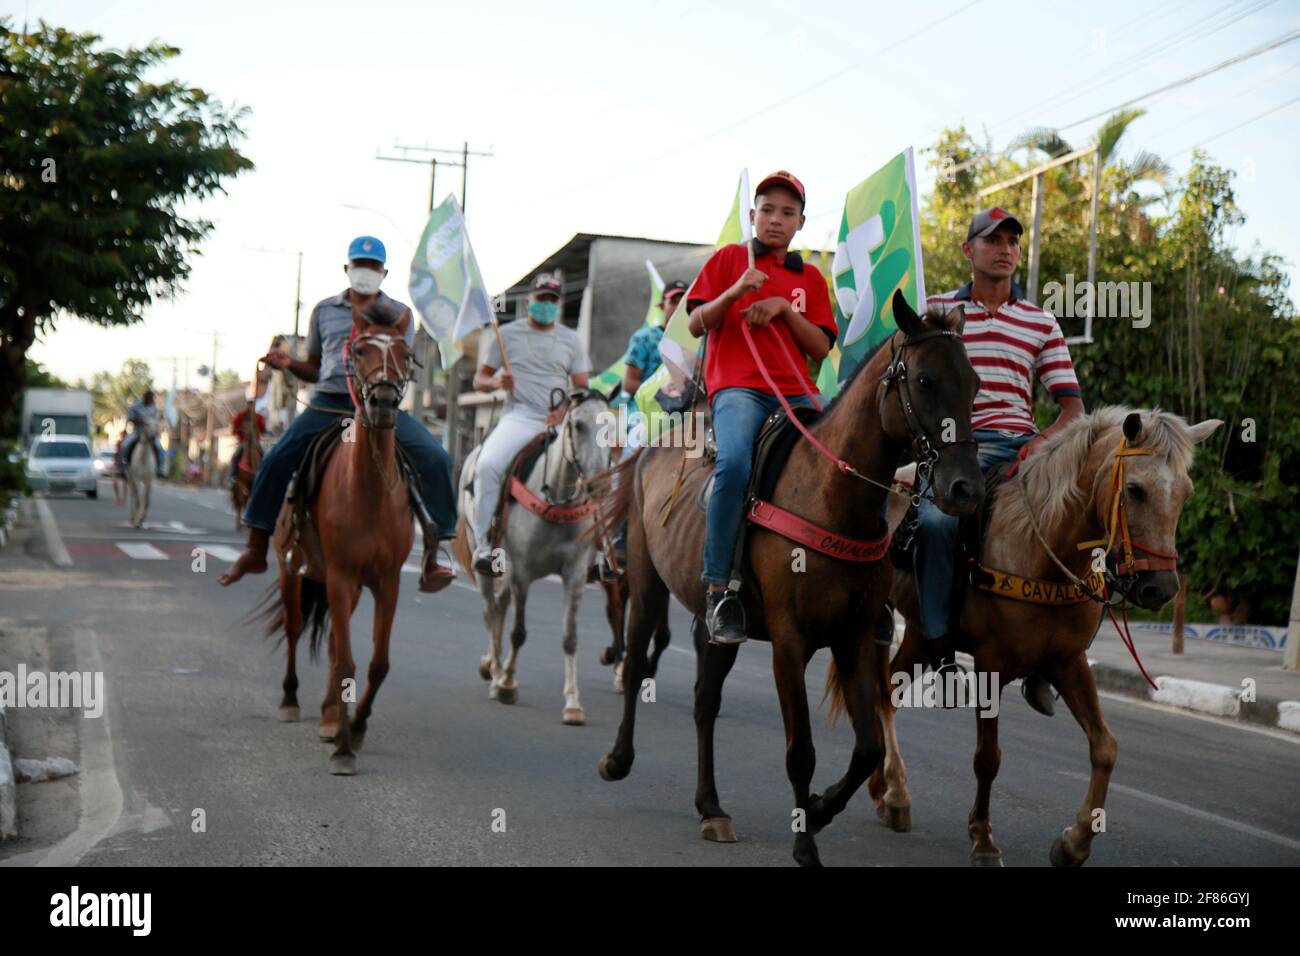 mata de sao joao, bahia, brasile - 10 novembre 2020: Si vedono le persone a cavallo durante una passeggiata nella città di Mata de Saoa Joao. Foto Stock